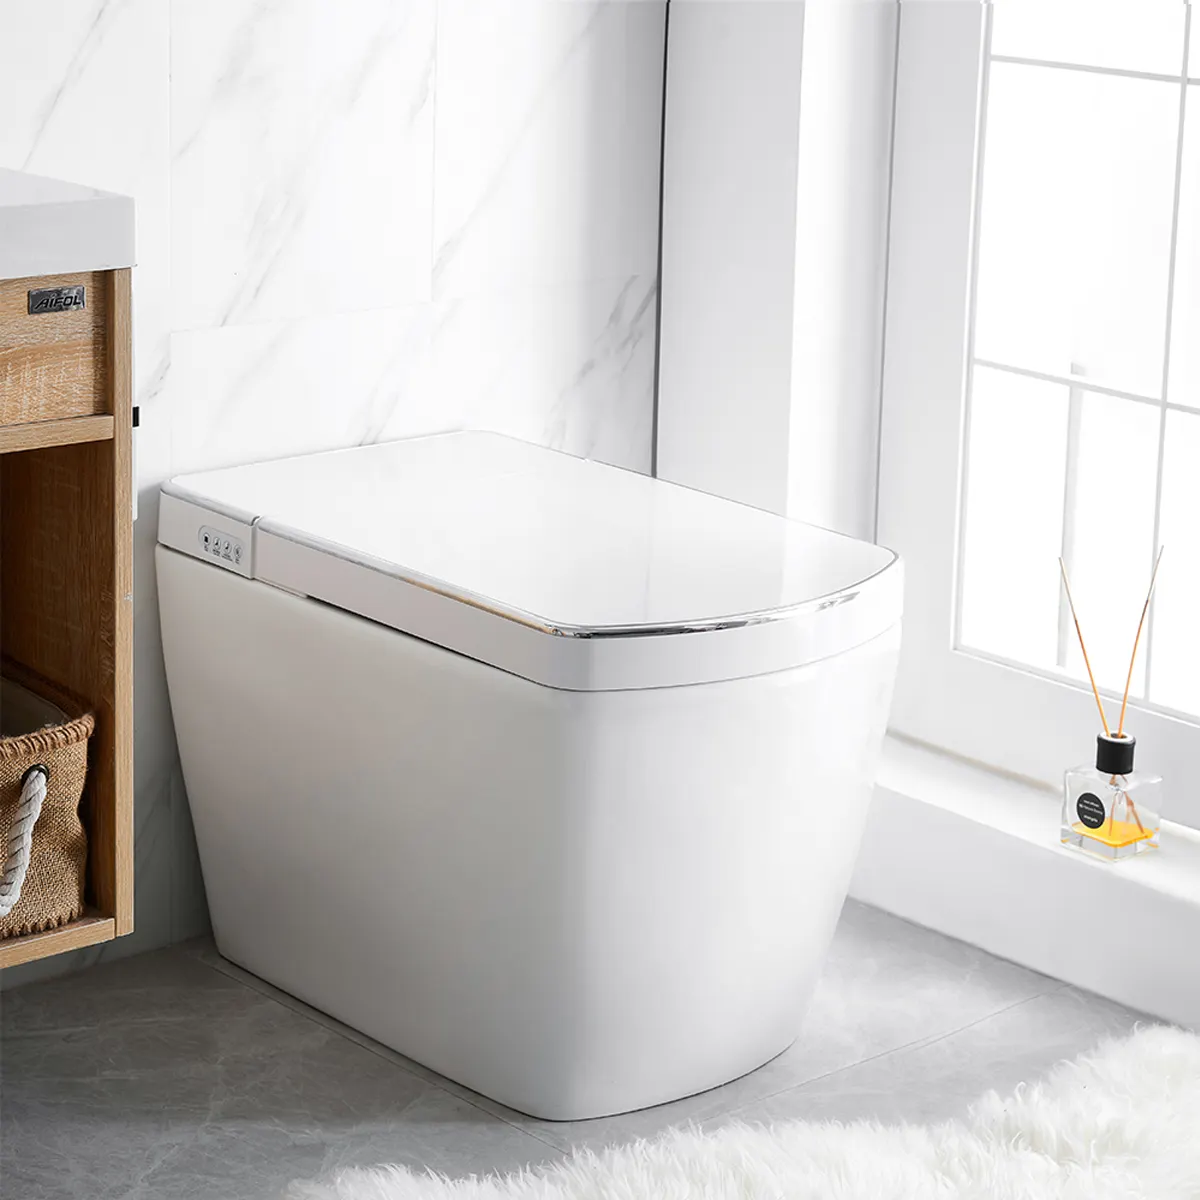 स्मार्ट एपीपी के साथ नियंत्रण डब्ल्यूसी शौचालय SL620 मंजिल घुड़सवार जापानी शैली wc घर के लिए पानी की टंकी के बिना